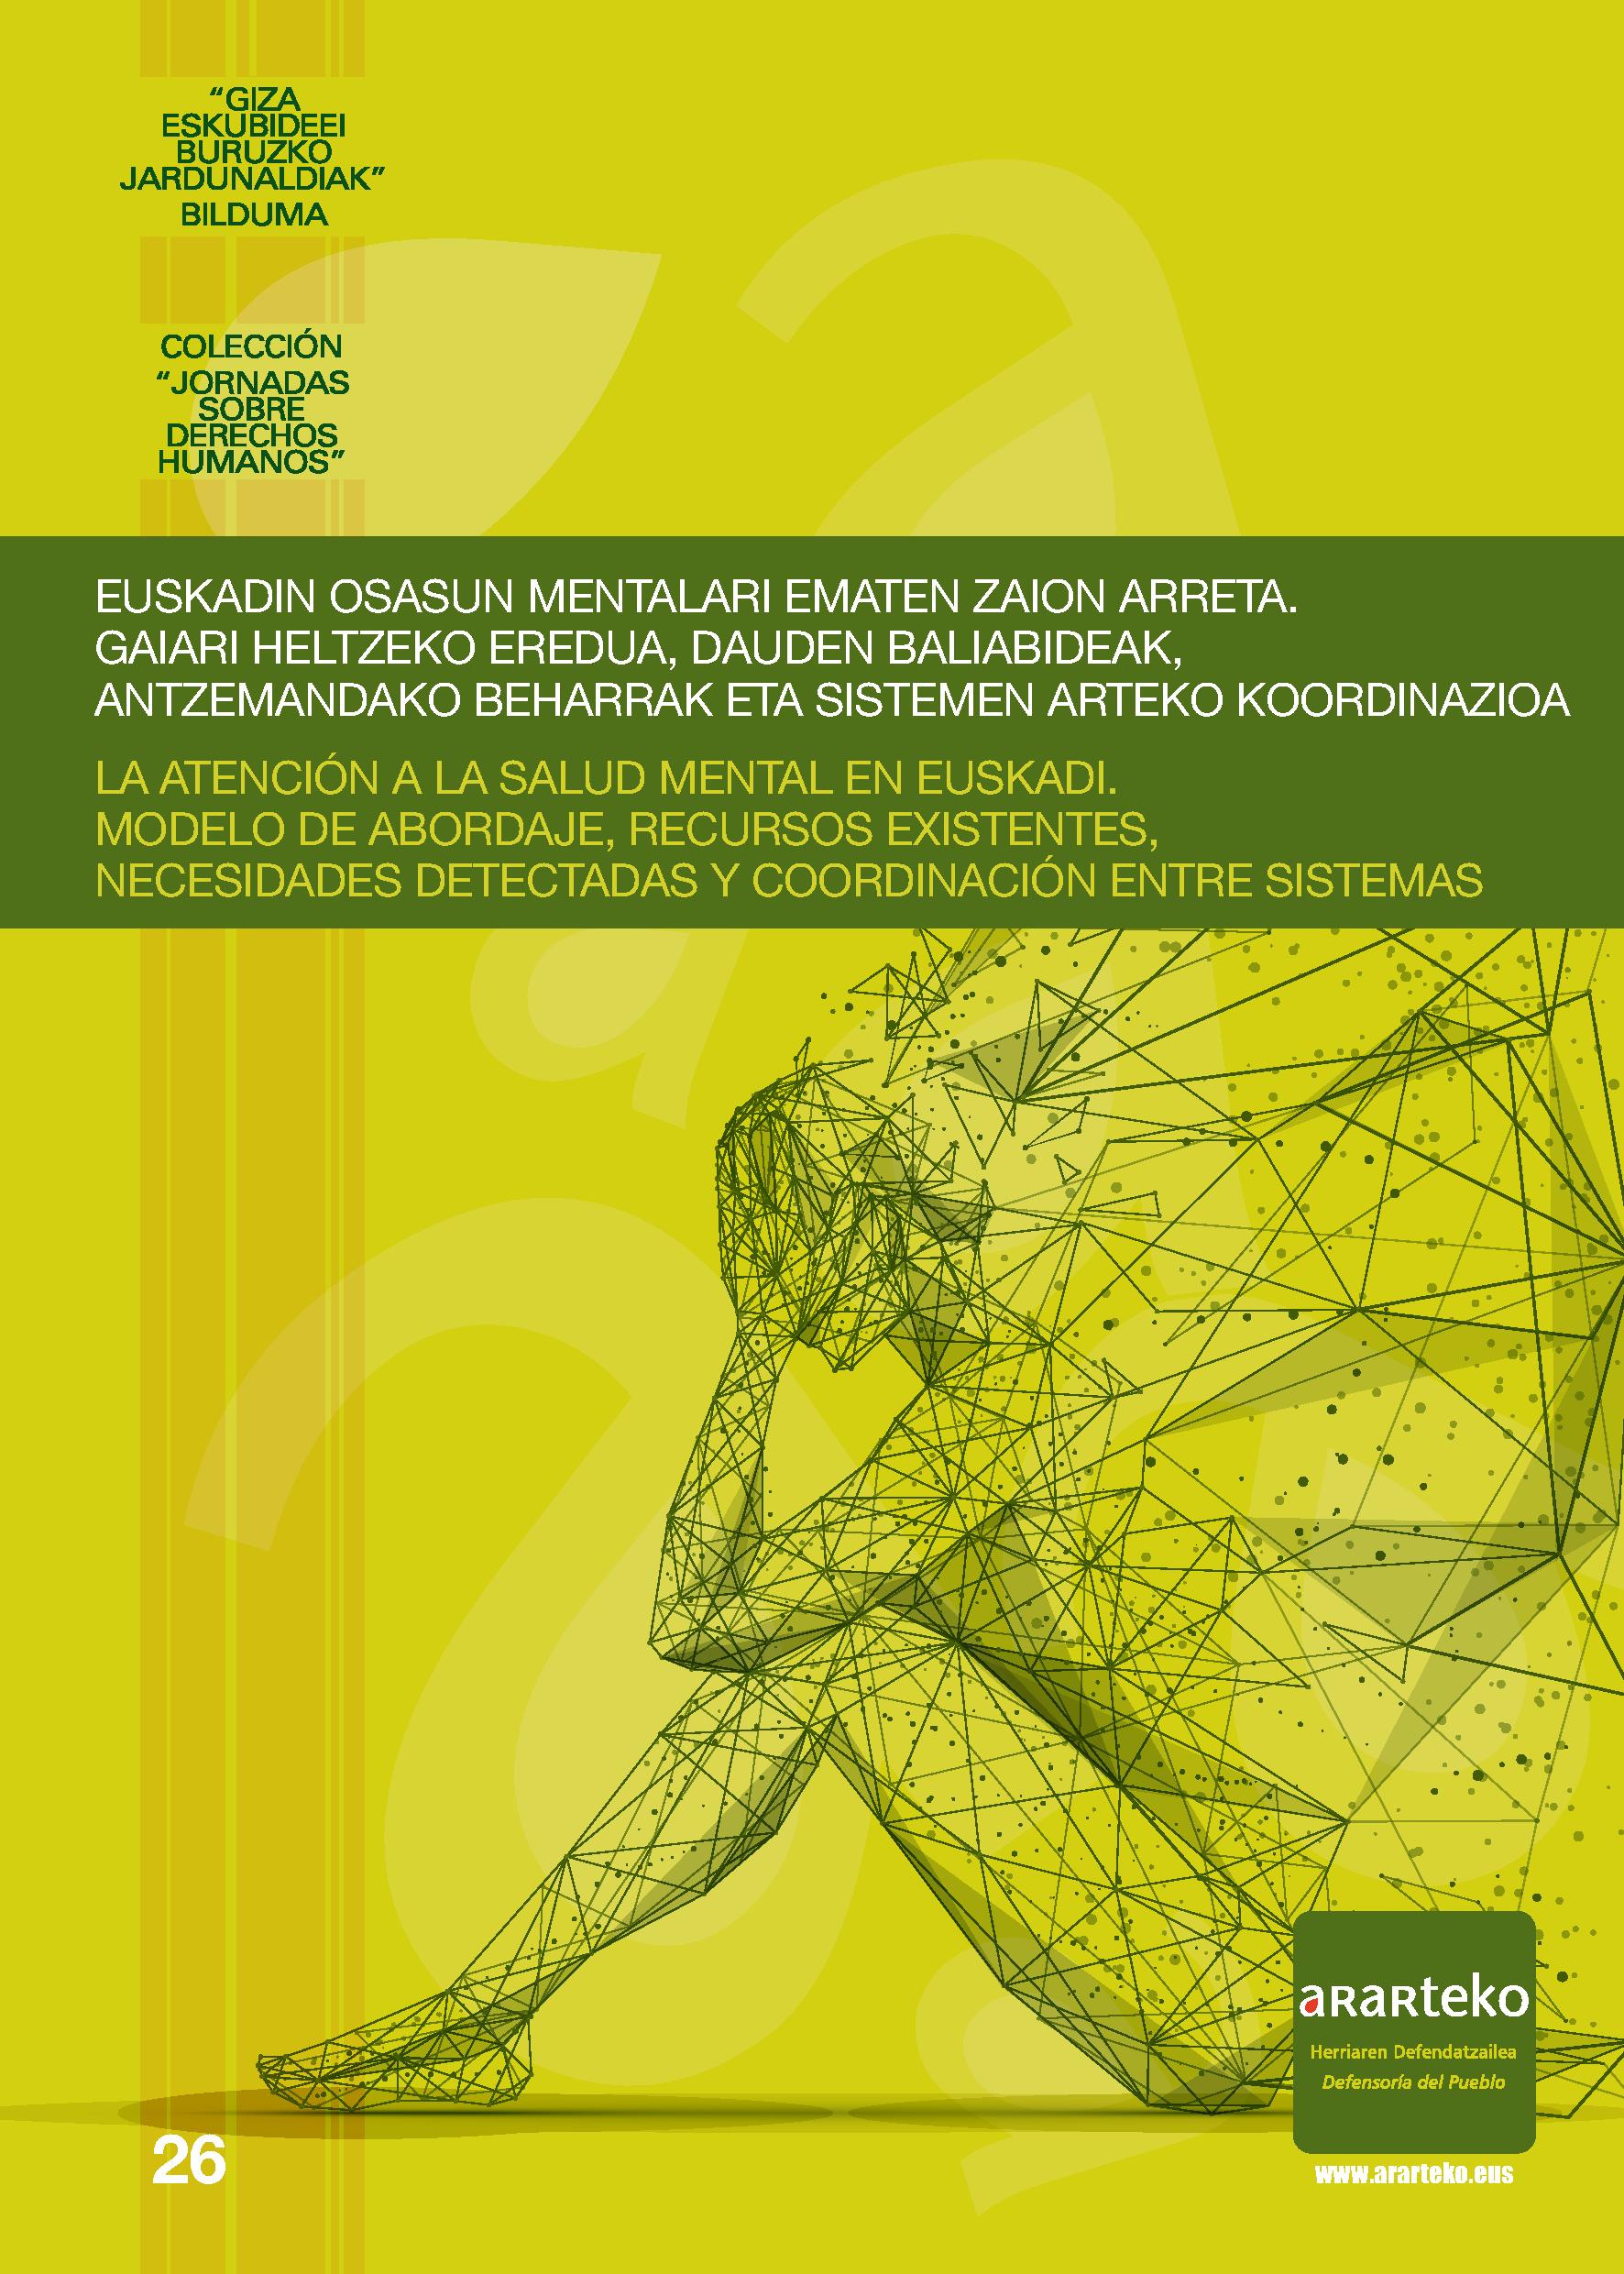 La atención a la salud mental en Euskadi: modelo de abordaje, recursos existentes, necesidades detectadas y coordinación entre sistemas